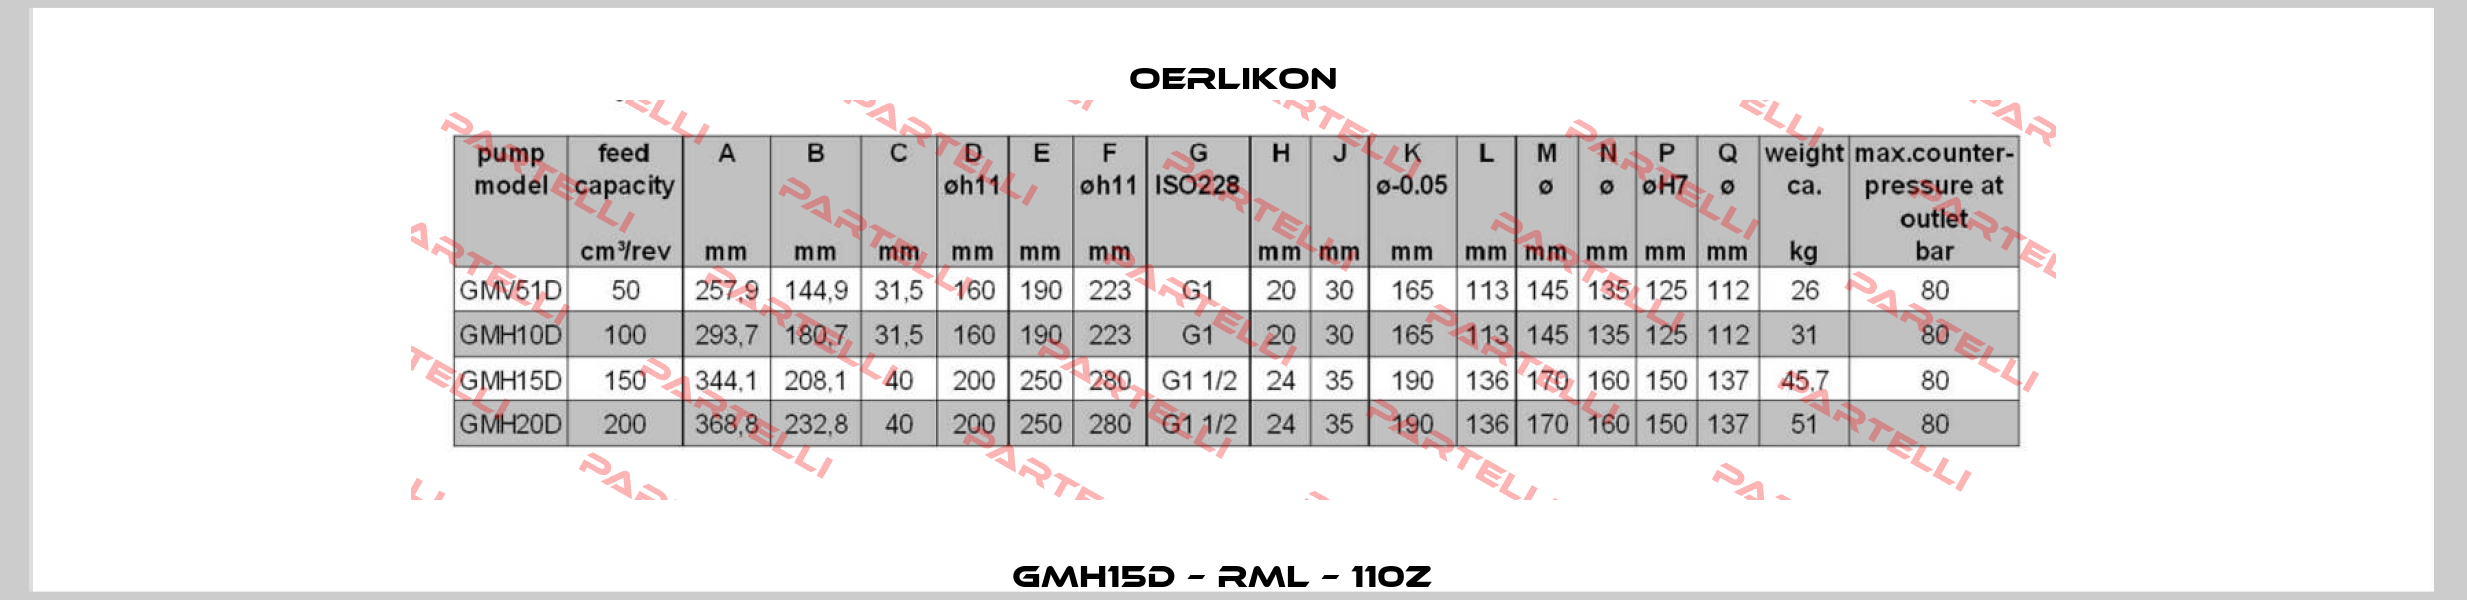 GMH15D – RML – 110Z   Oerlikon